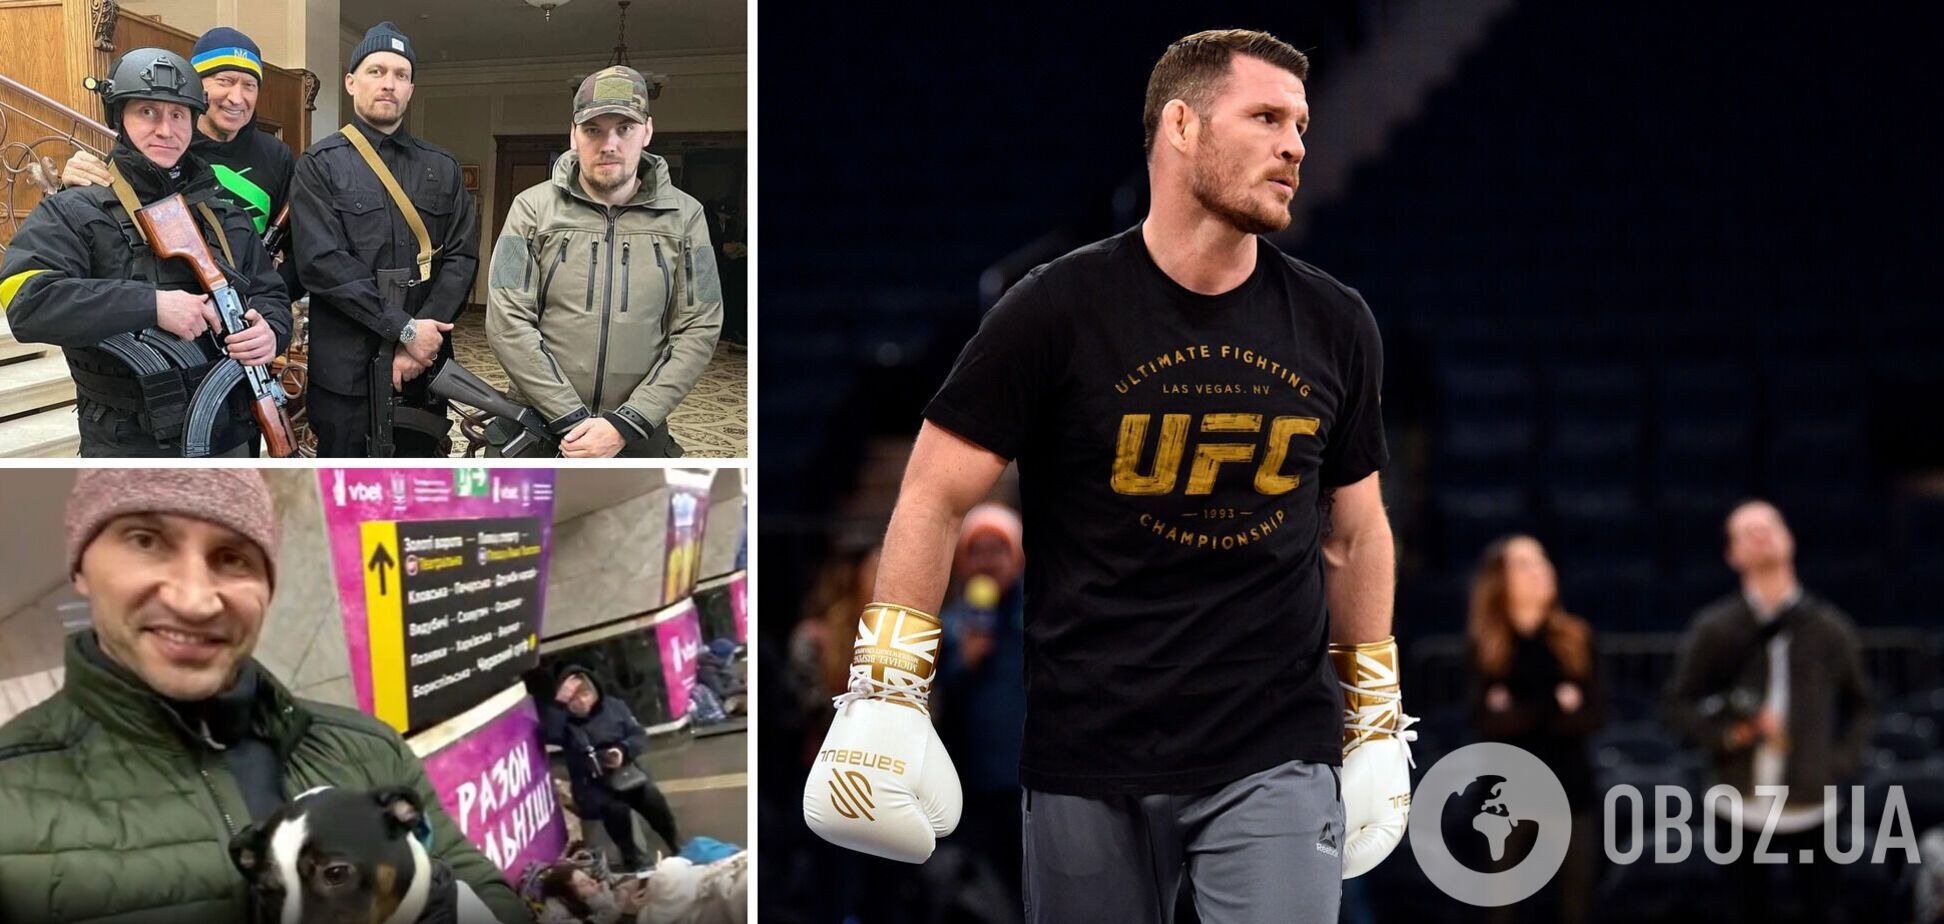 '200 тысяч гр*баных россиян': бывший чемпион UFC восхитился Усиком, Кличко и Ломаченко, защищающих Украину